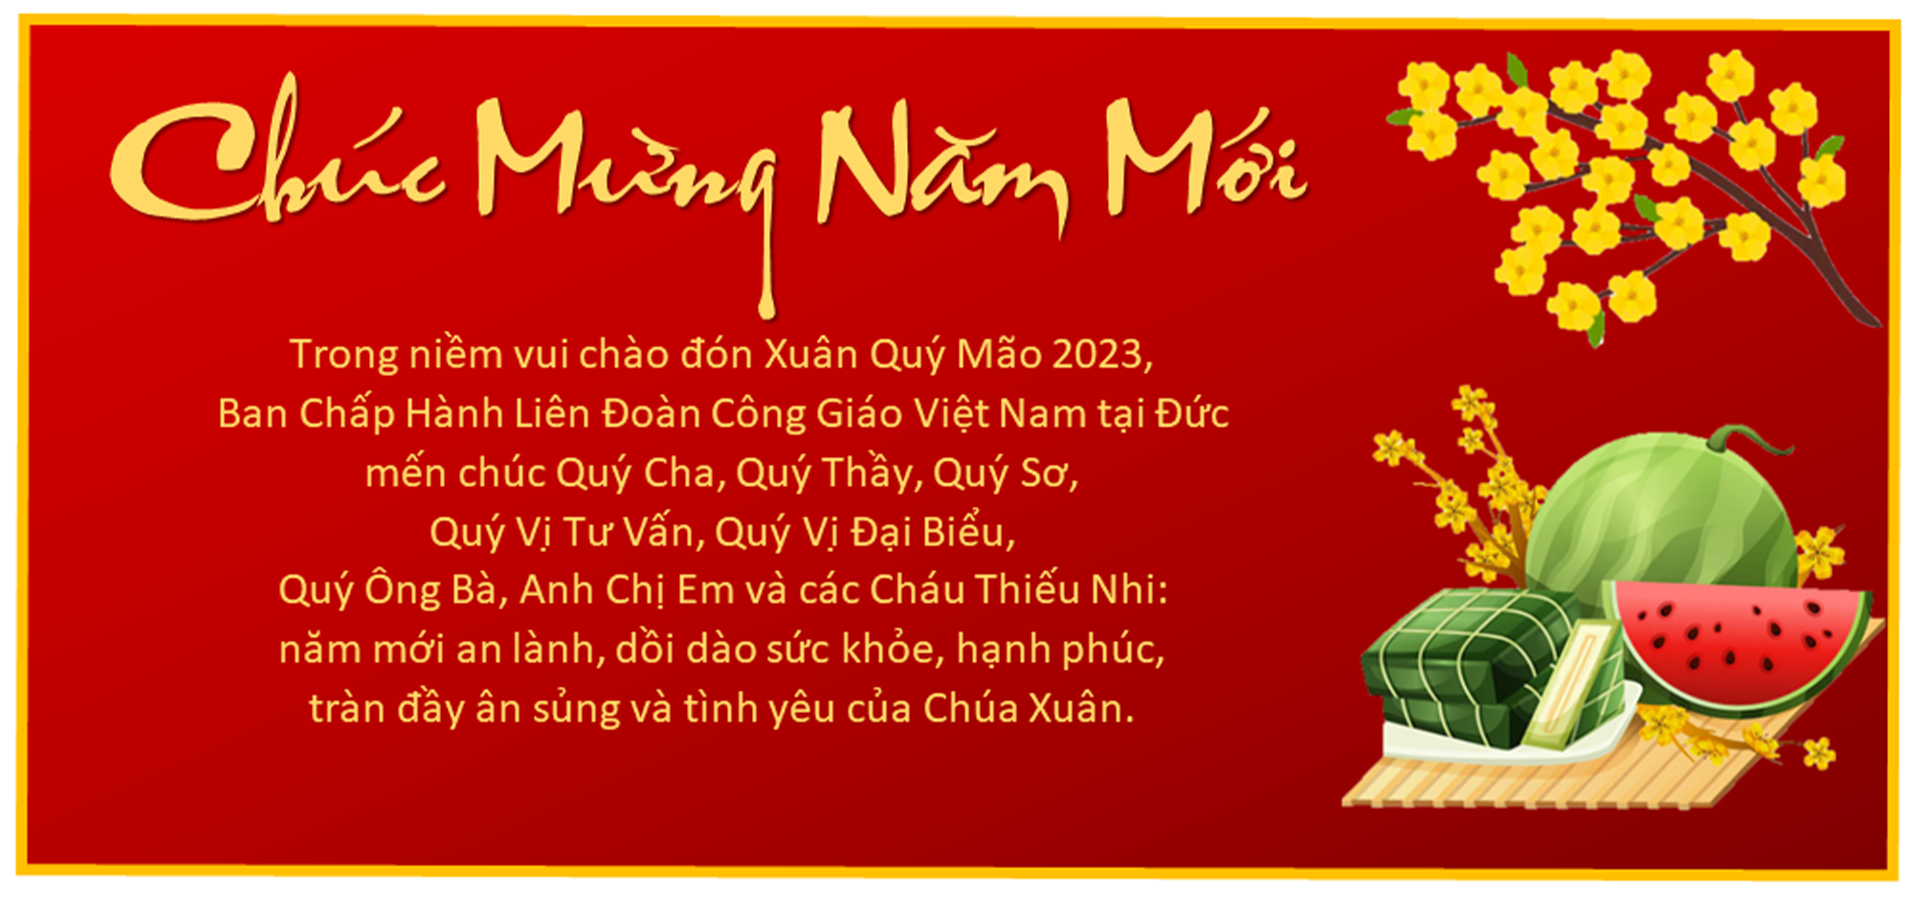 Chuc Mung Nam Moì 2023